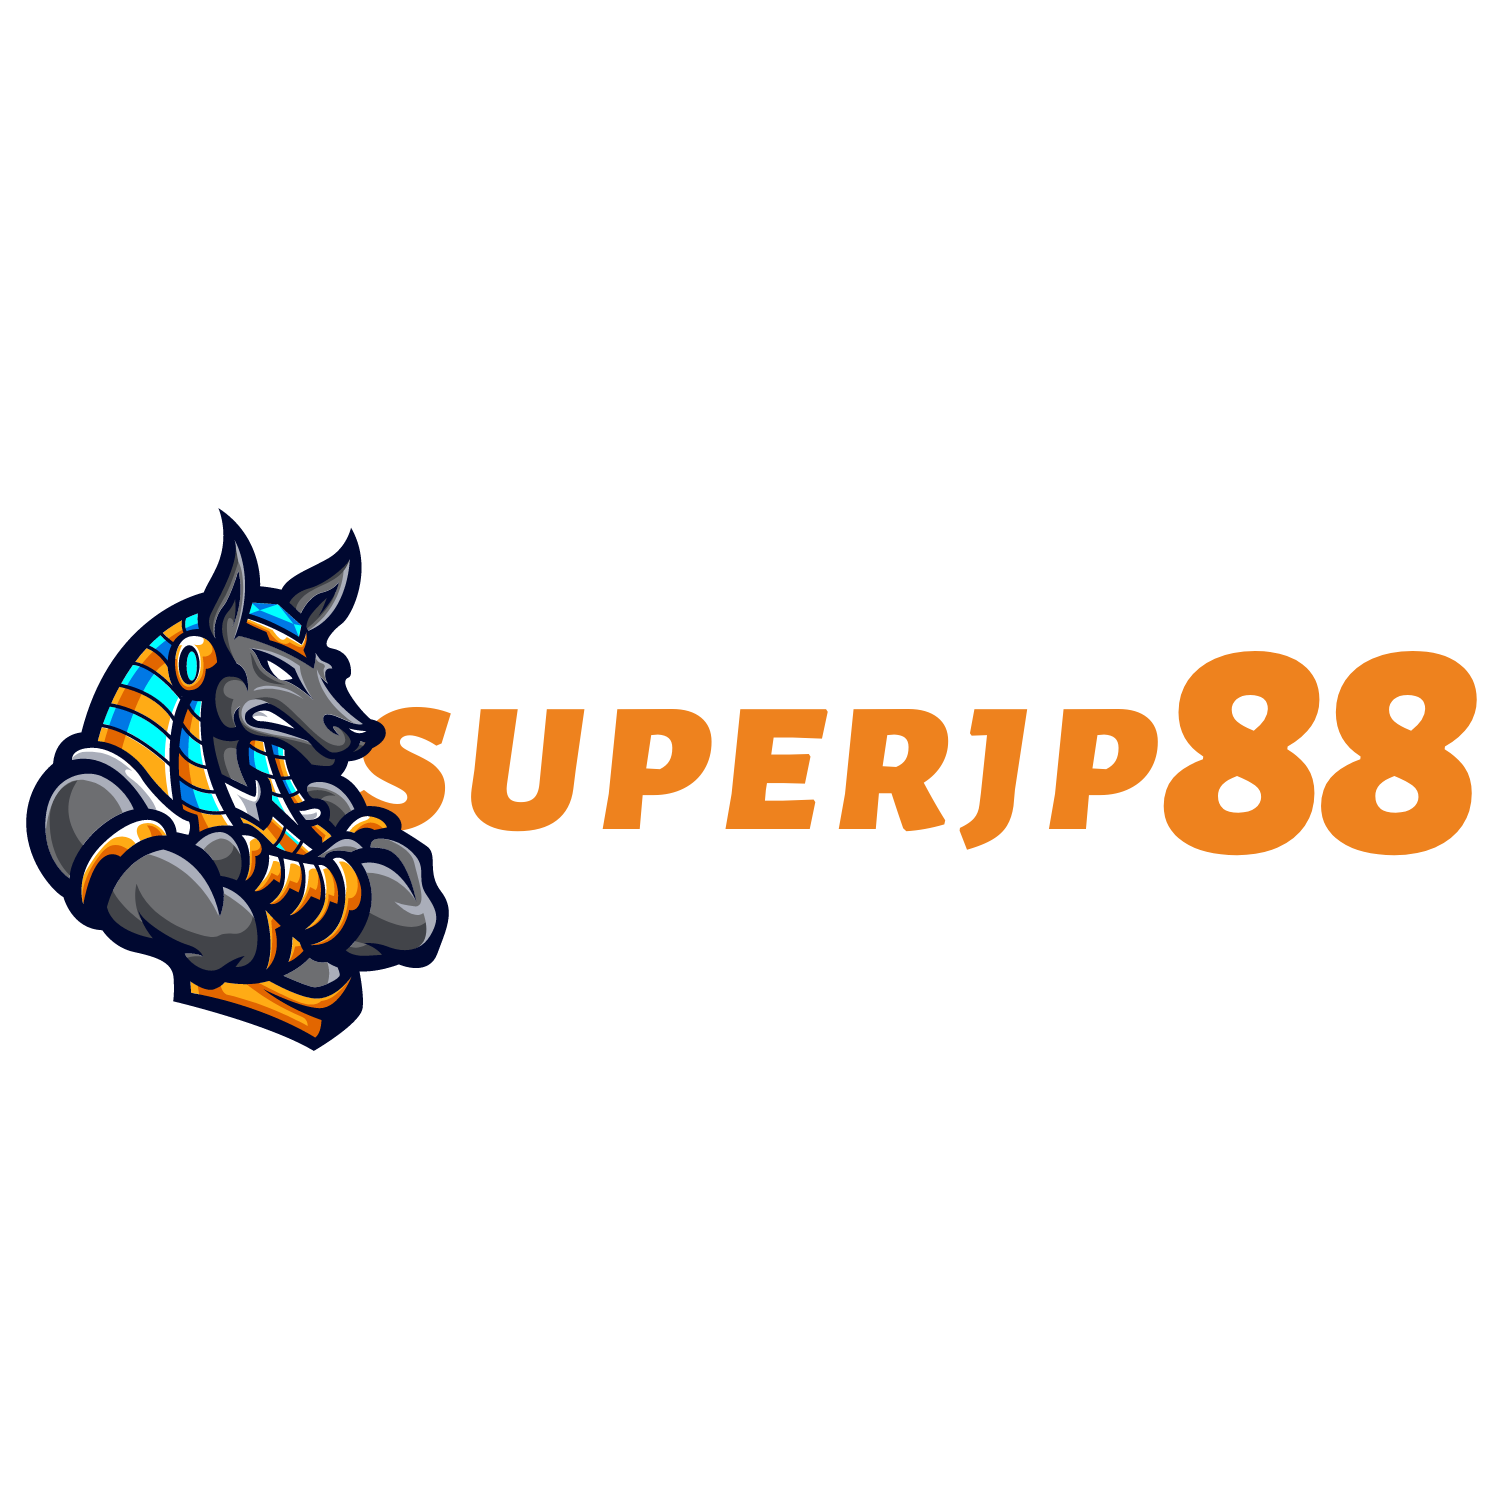 SUPERJP88